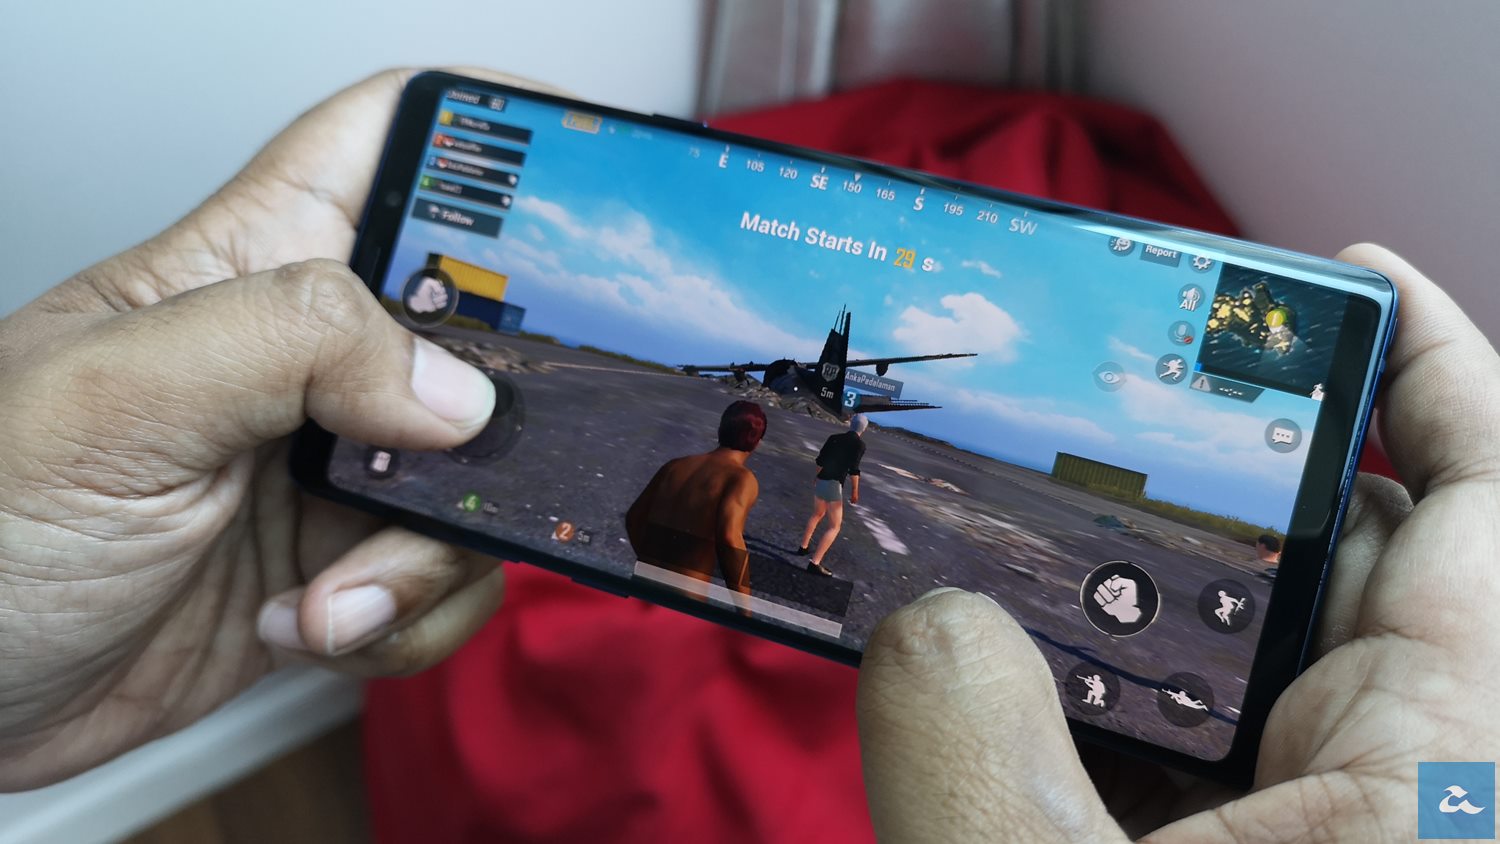 Yoodo Meneruskan Penawaran 20GB Percuma Untuk PUBG Mobile Sehingga Penghujung Julai 2019